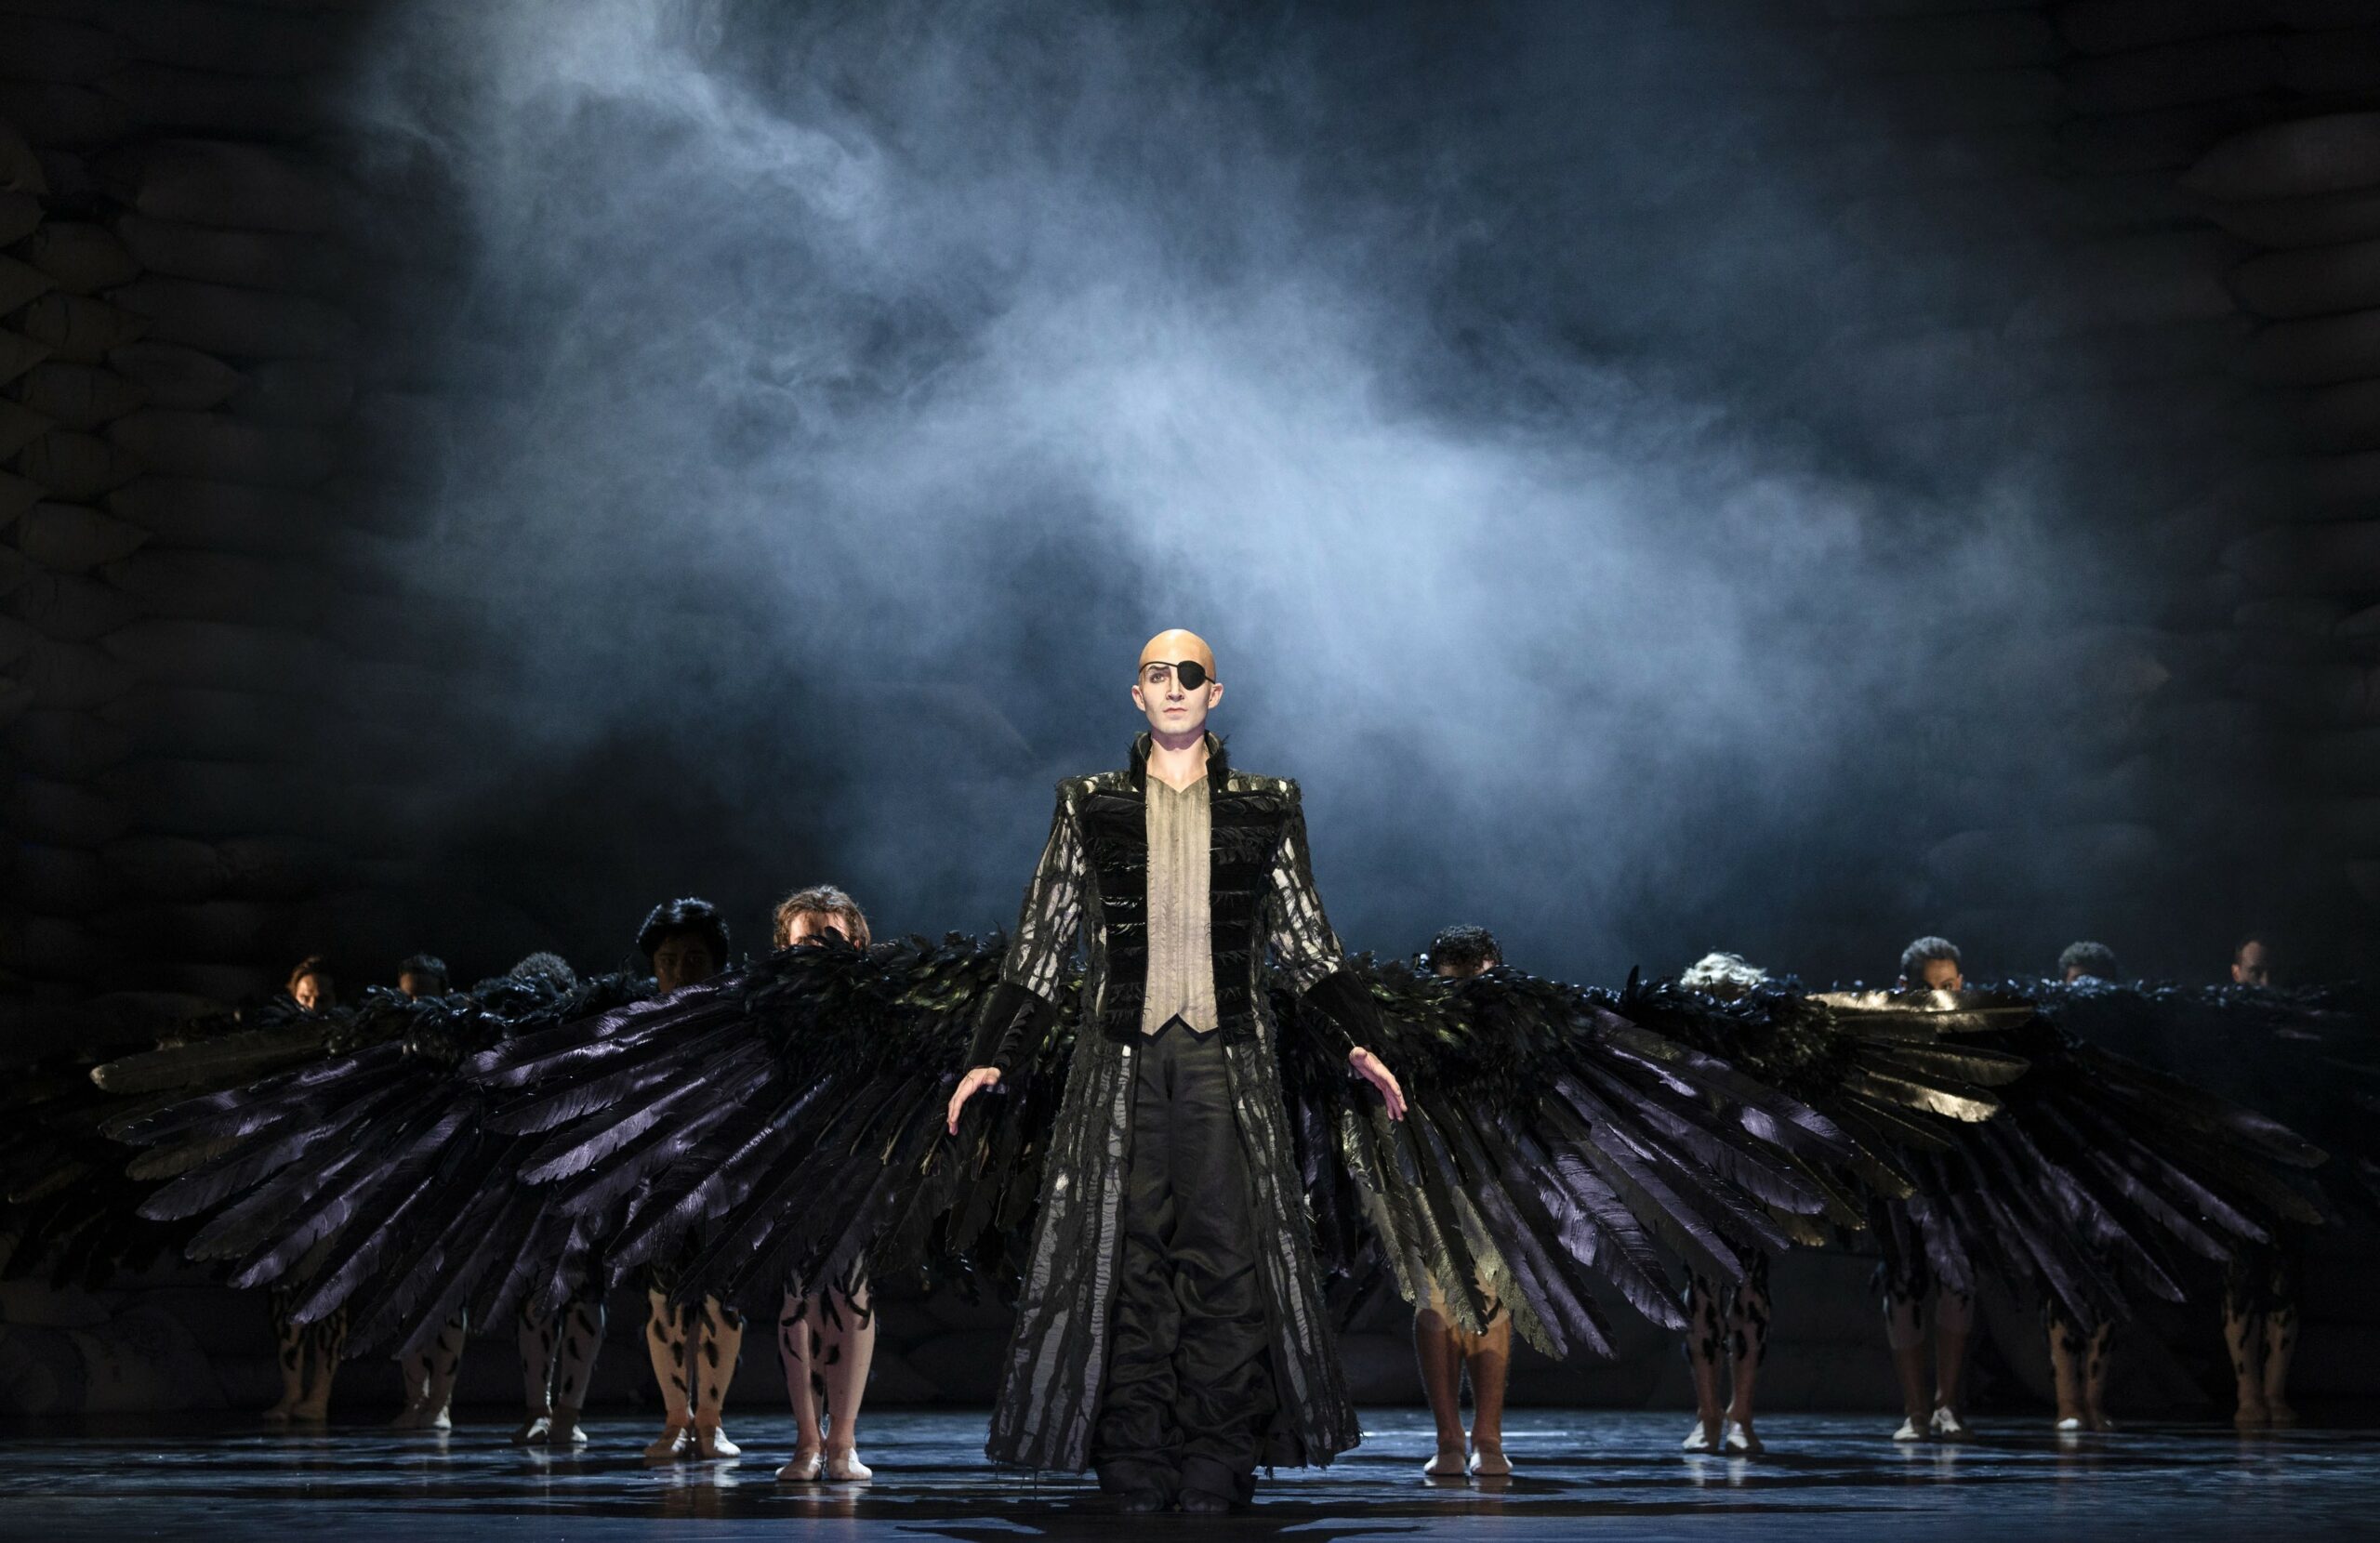 Düsteres Bühnenbild, vorne ein Mann mit riesigen schwarzen Krähen-Flügeln